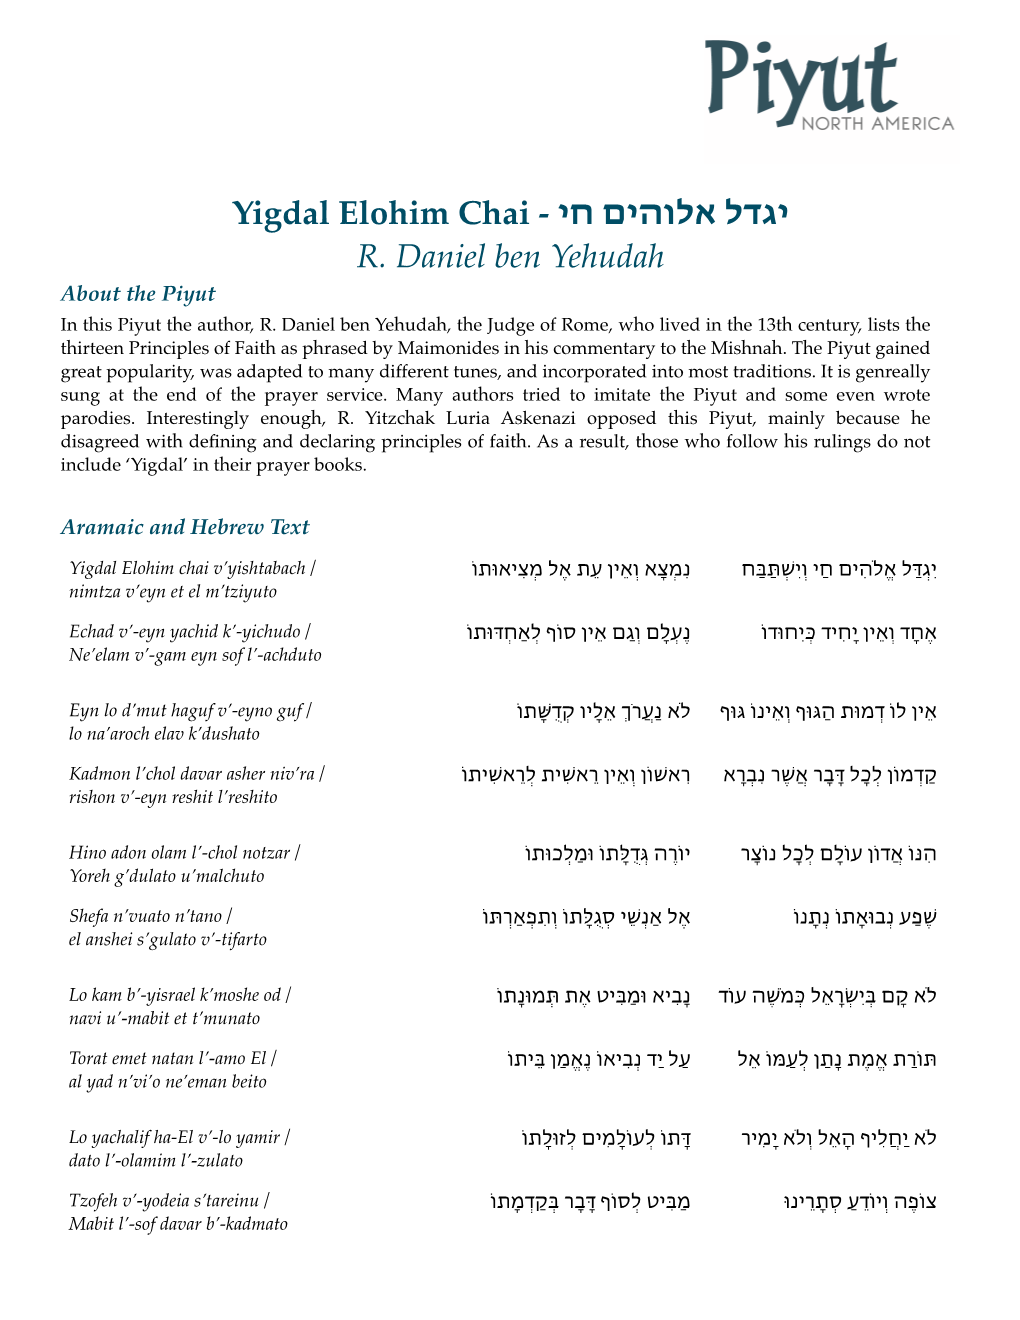 יגדל אלוהים חי - Yigdal Elohim Chai R